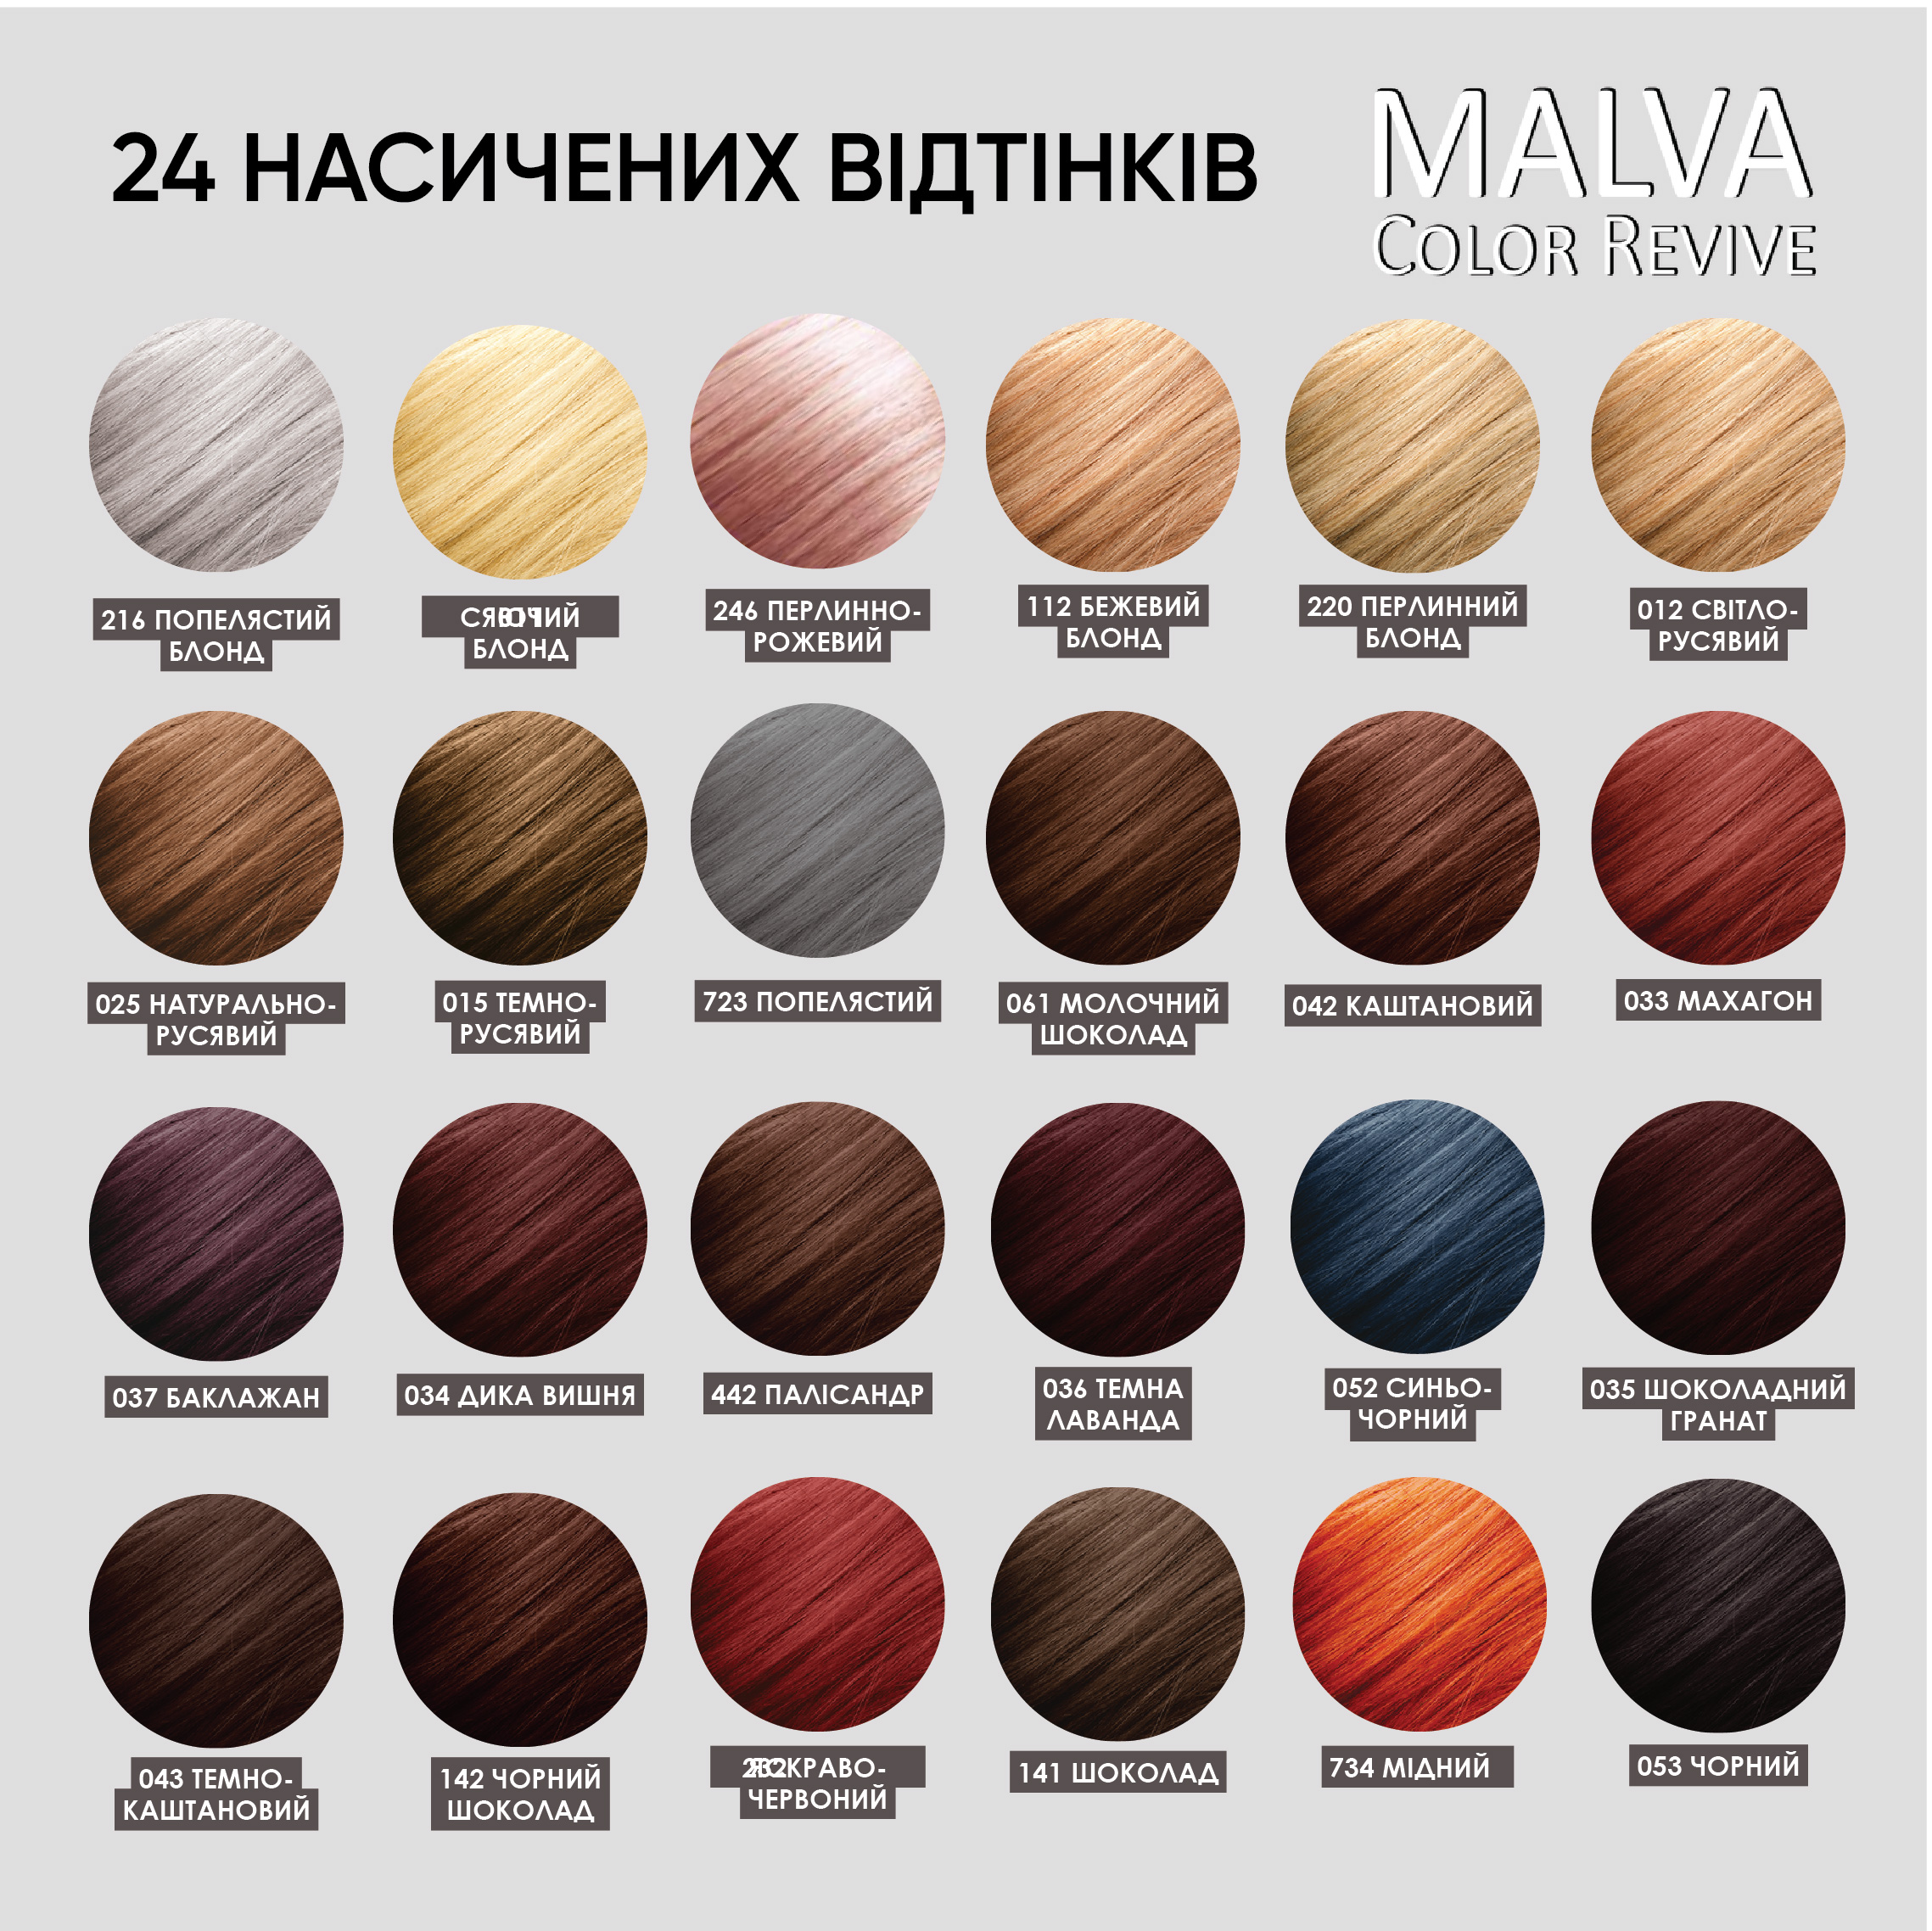 Устойчивая крем-краска для волос Malva Color Revive оттенок 723 Пепельный - фото 6